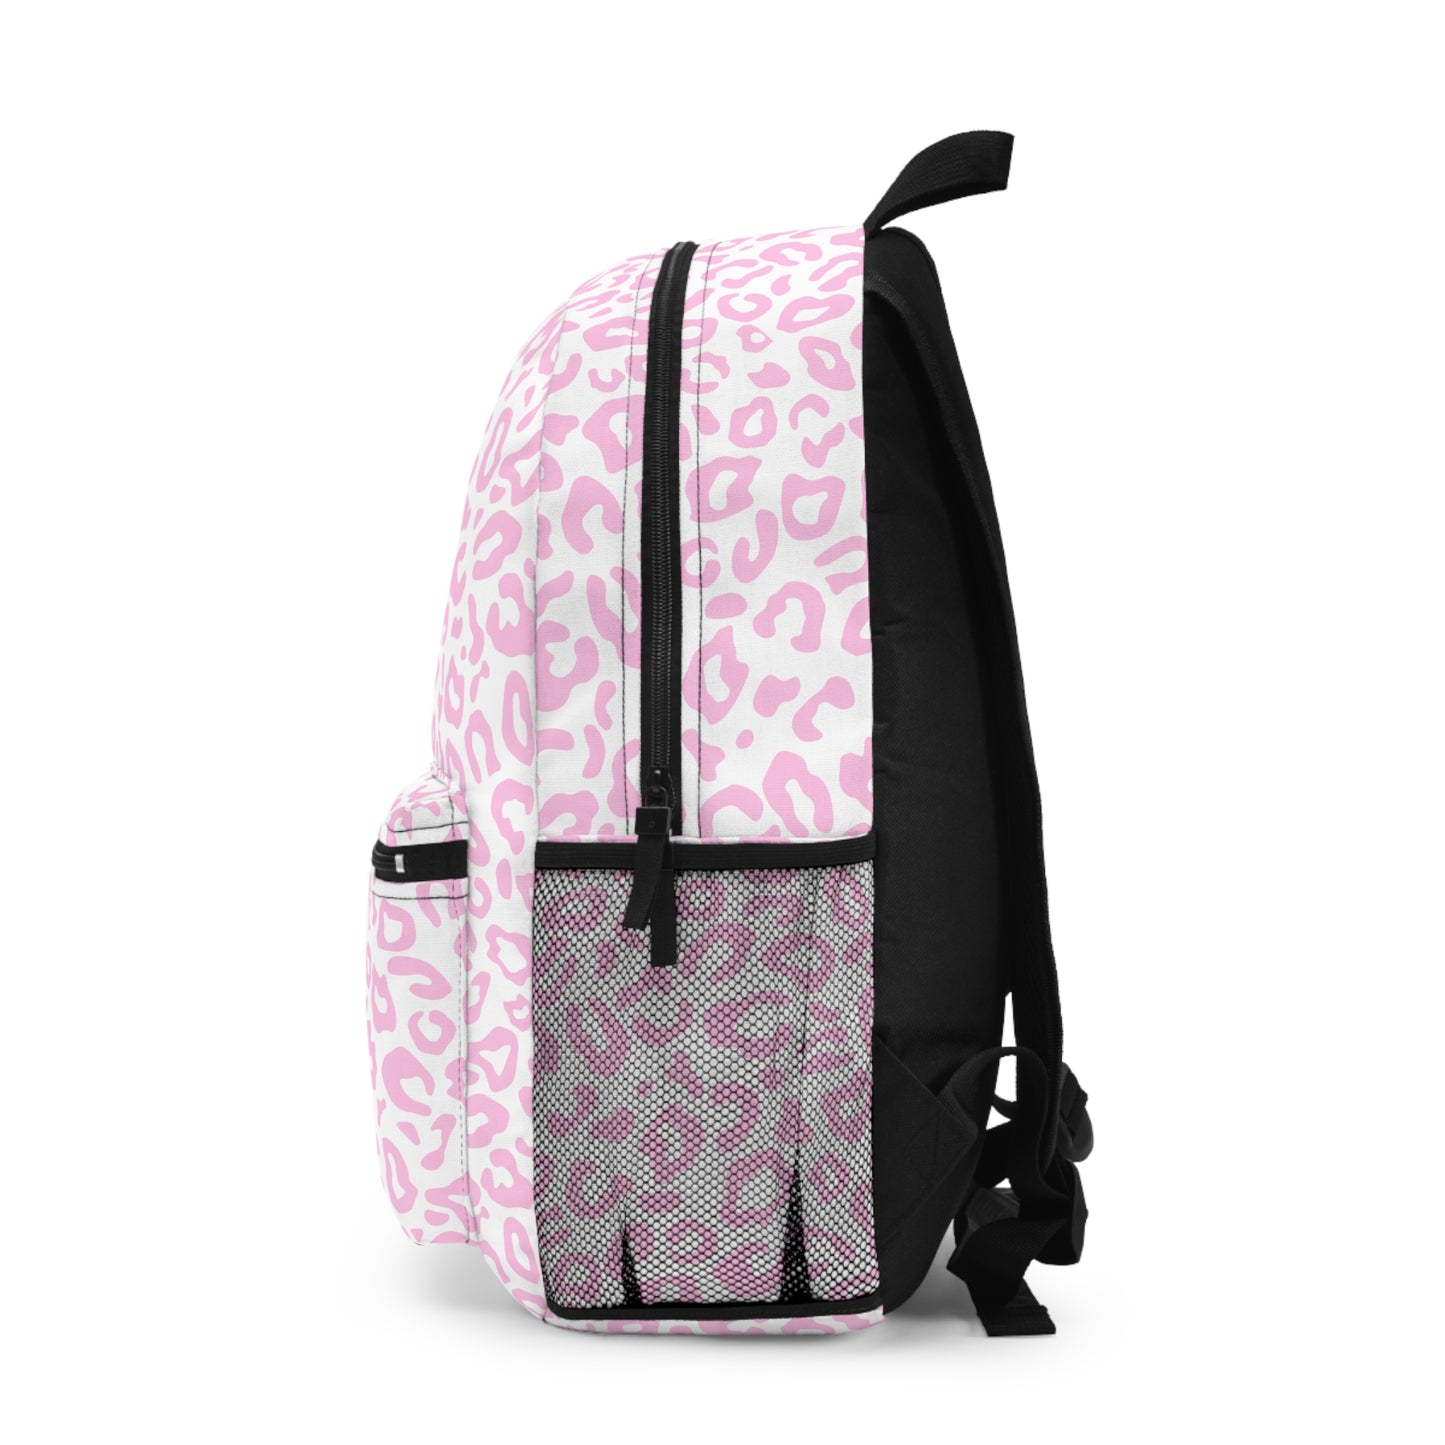 Pink Leopard Print Backpack